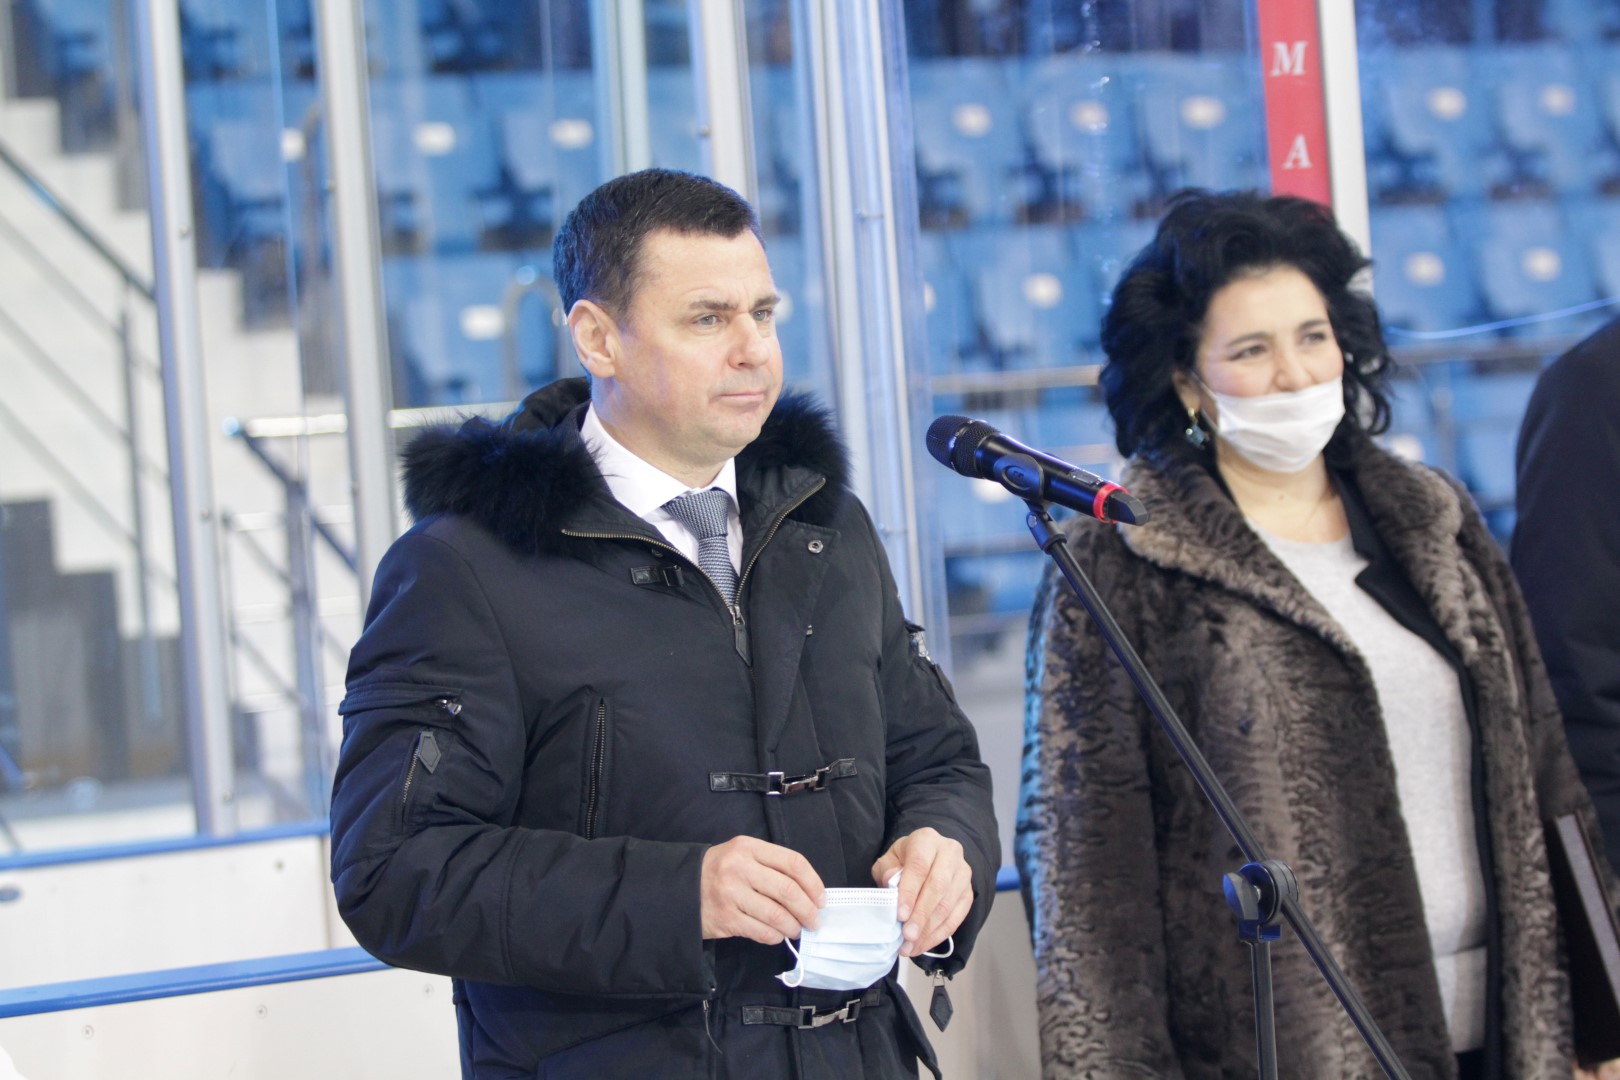 Дмитрий Миронов посетил первый в Ярославле матч по следж-хоккею